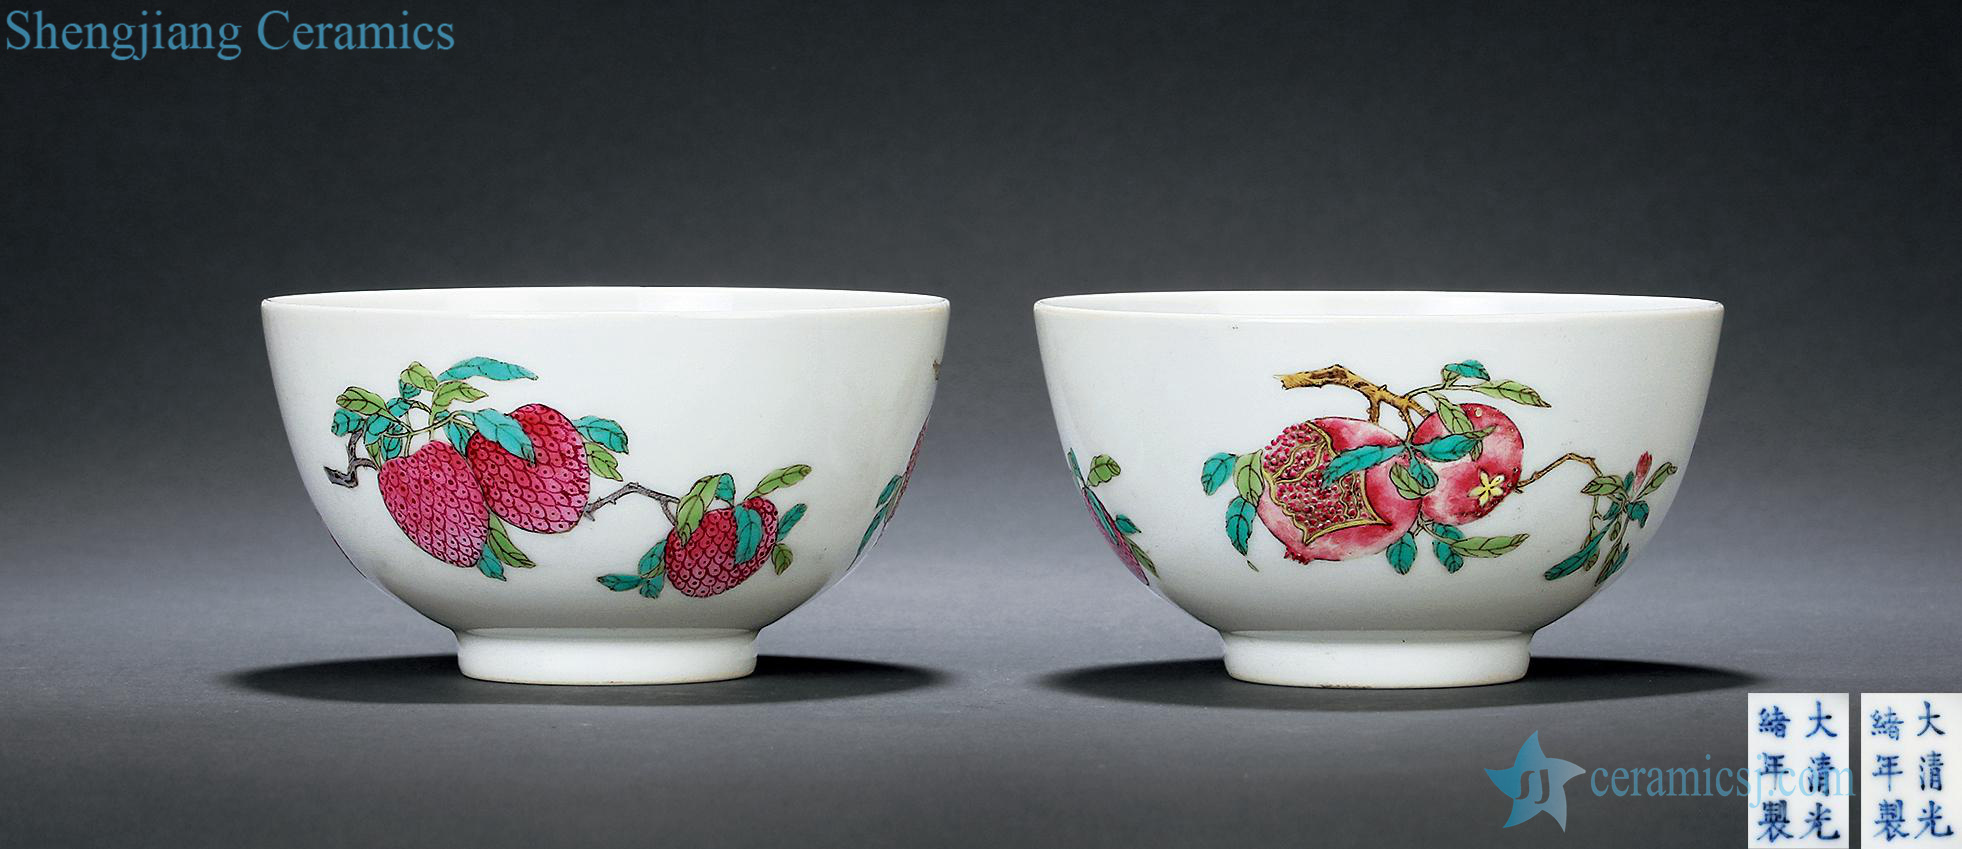 Pastel reign of qing emperor guangxu sanduo bowl (a)